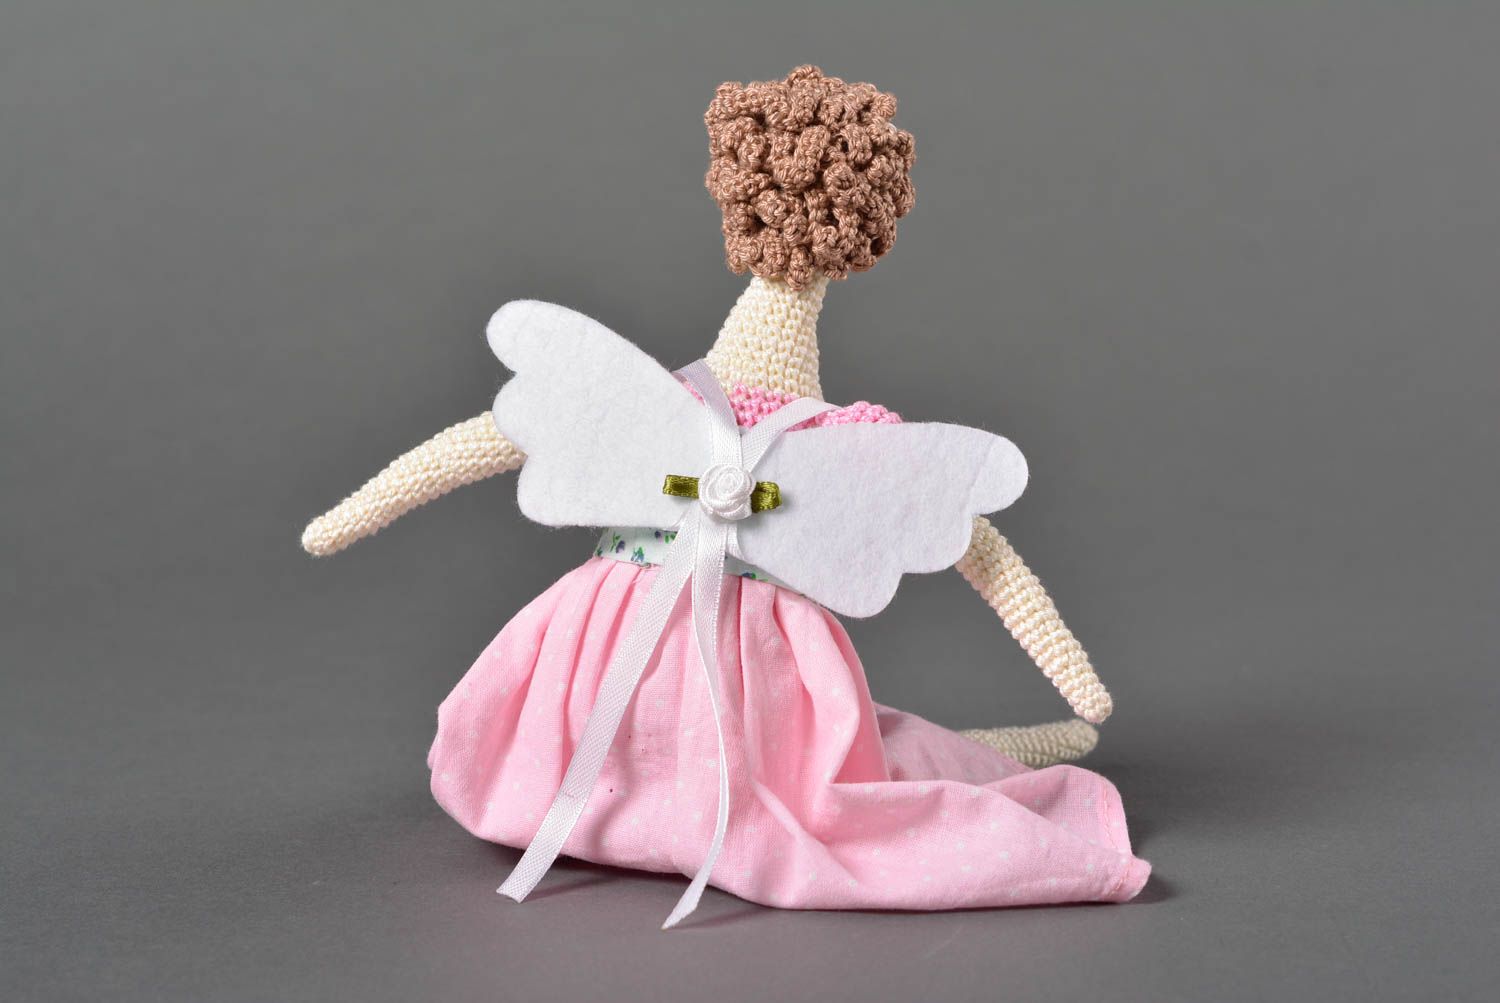 Handmade doll designer doll gift ideas home decor gift for girls soft toy photo 3